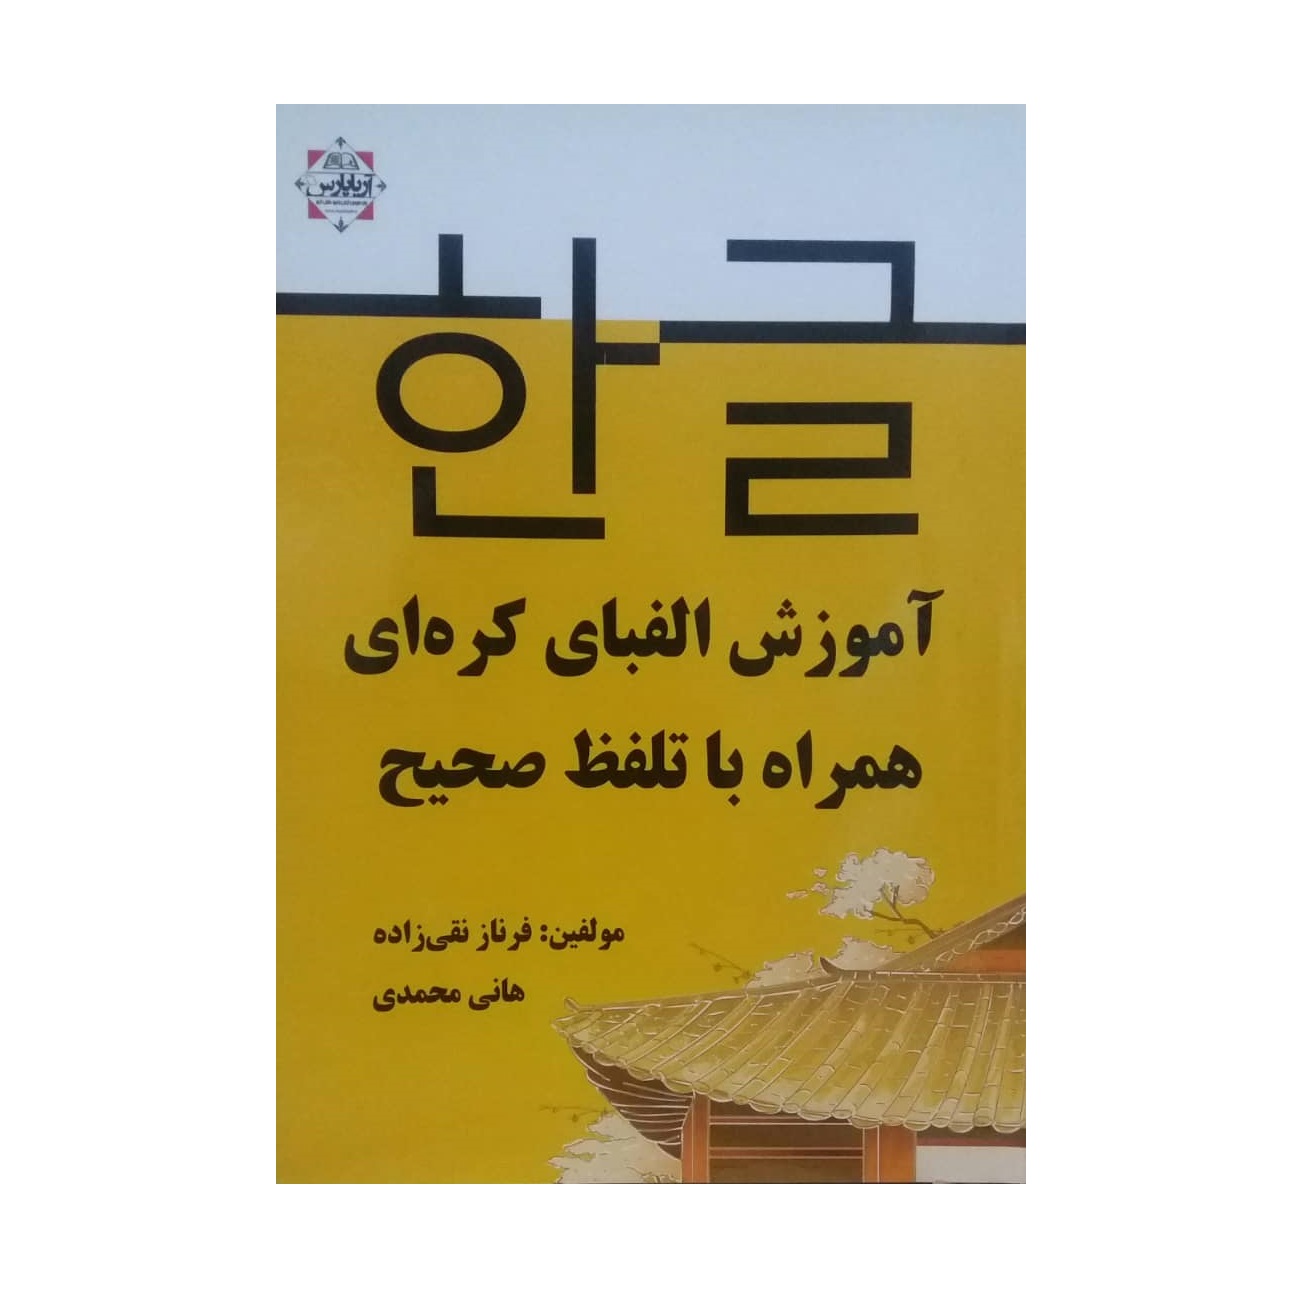 کتاب آموزش الفبای کره ای همراه با تلفظ صحیح اثر فرناز نقی زاده نشر آریا پارس